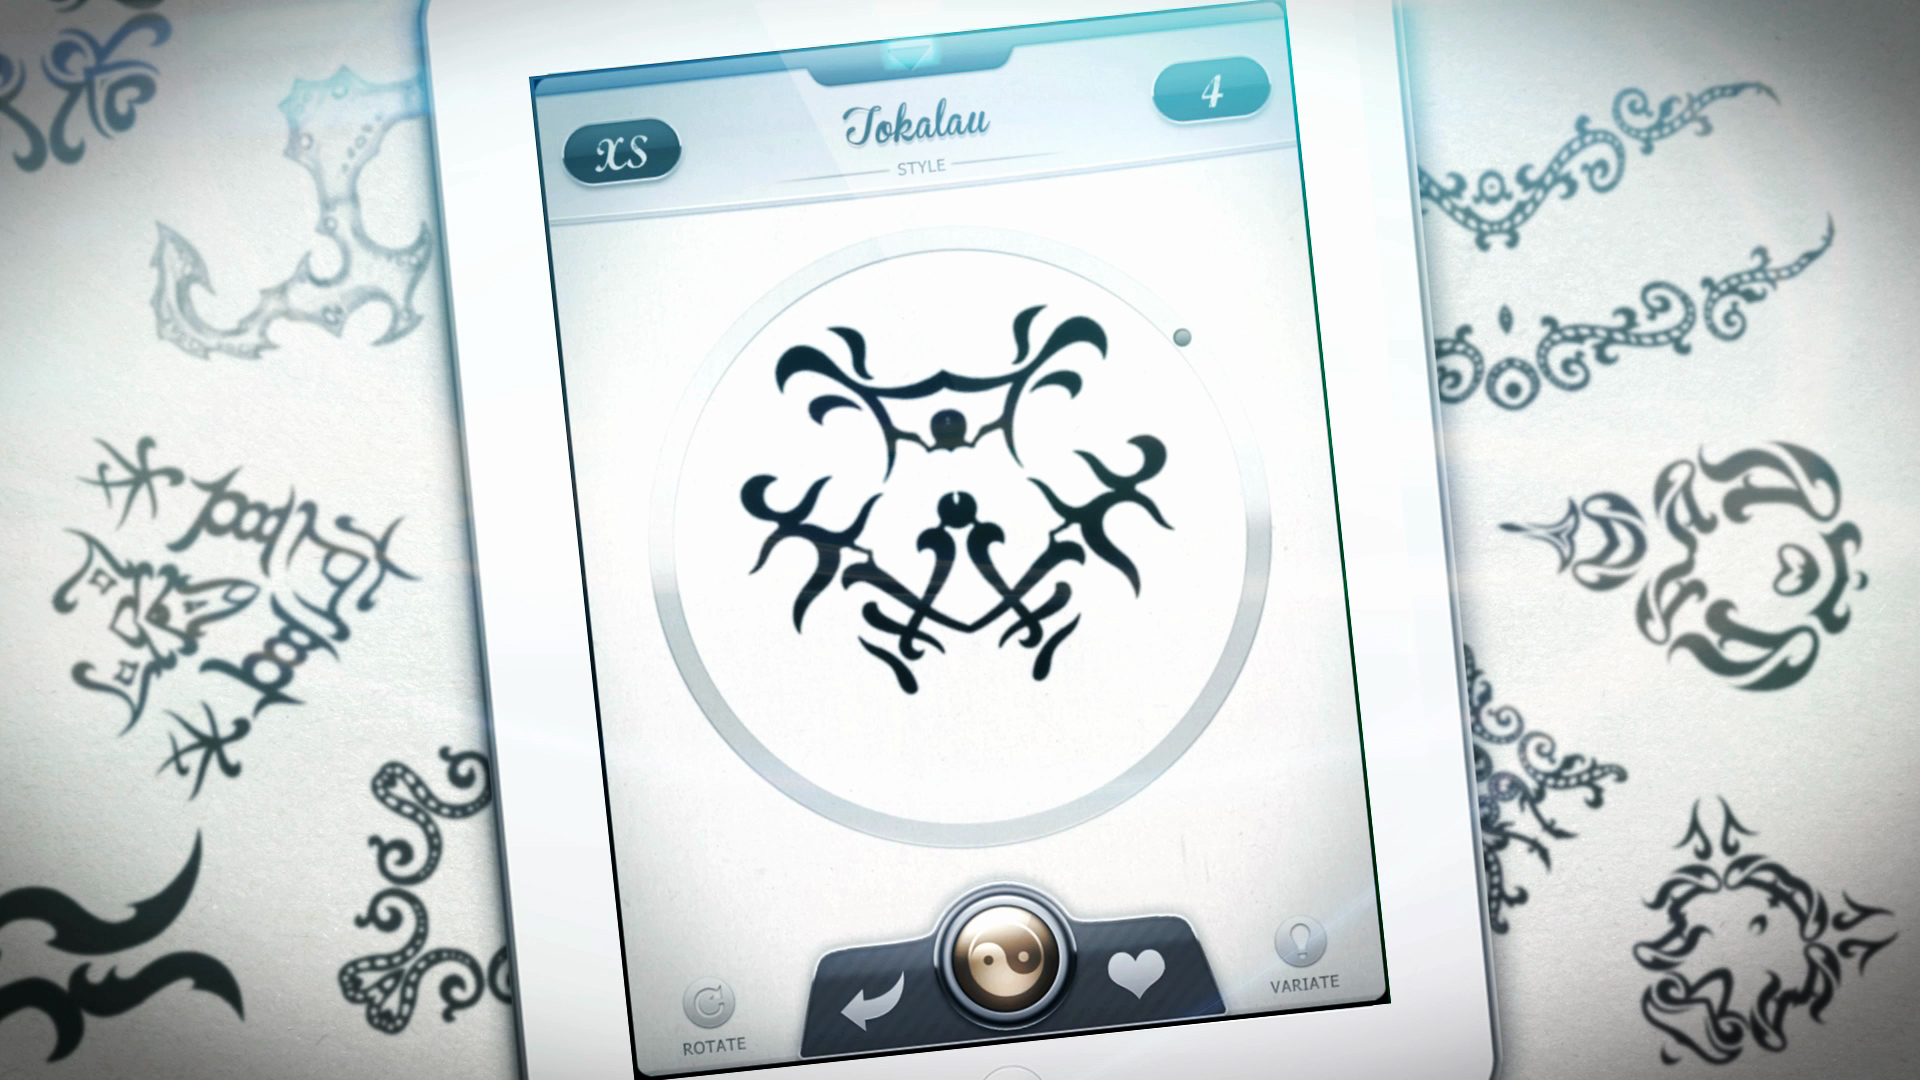 Instattoo: Crea tus propios tatuajes ahora desde una app